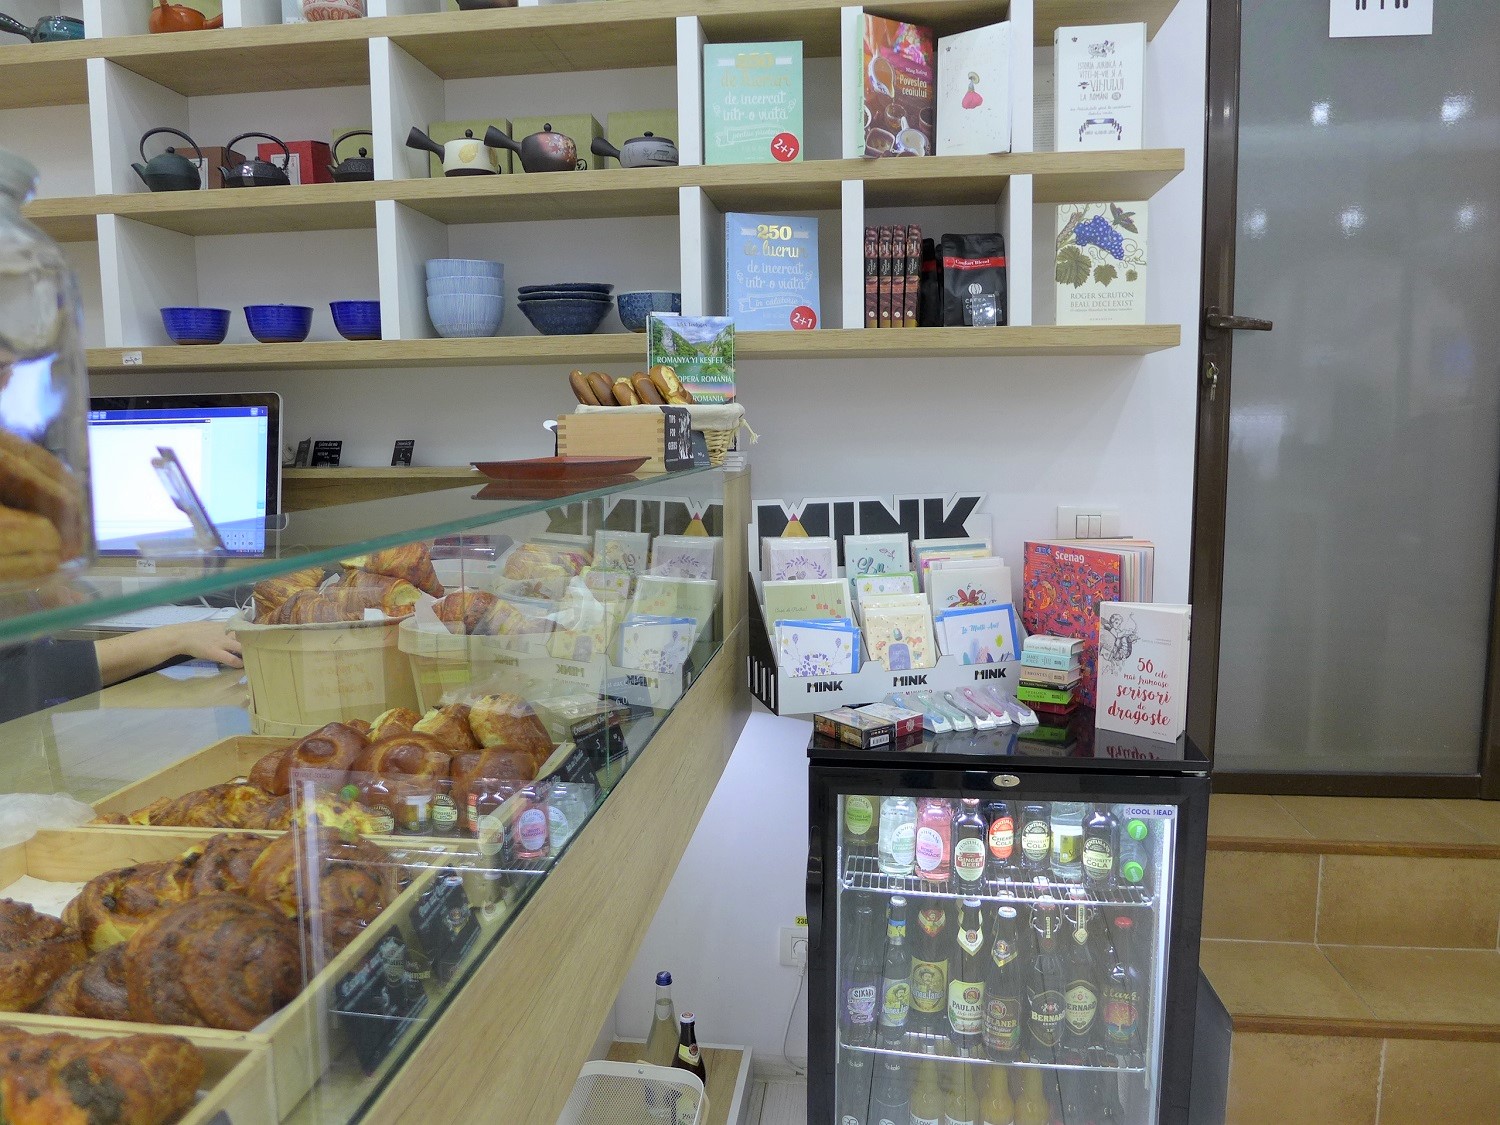 « La Petite bouffe » est à la fois une libraire, une pâtisserie et une boulangerie. C’est une alliance entre la chaîne de librairie Humanitas et la boulangerie artisanale Rue du pain.